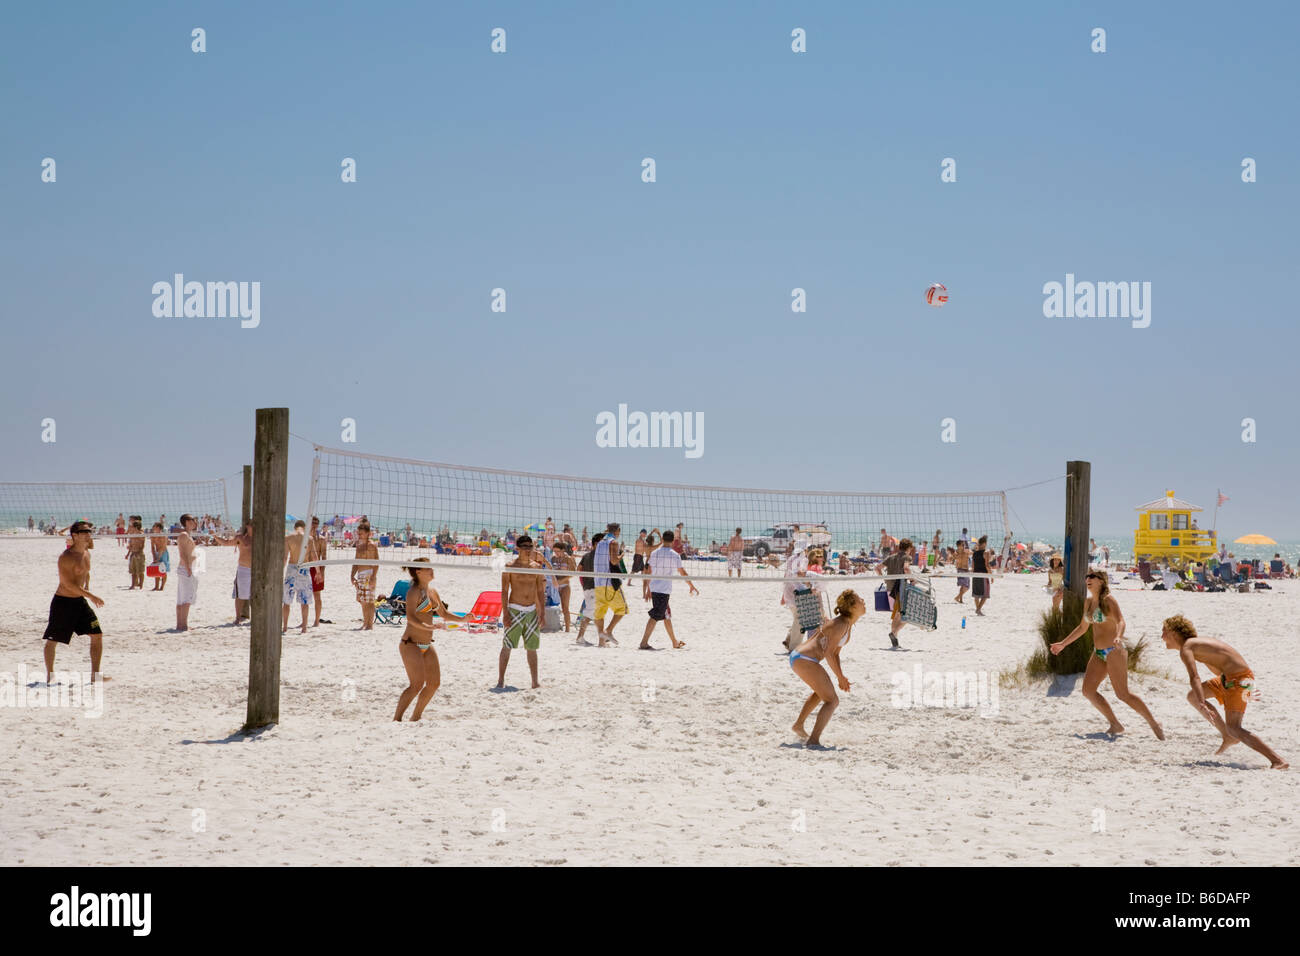 Partita di pallavolo sulla spiaggia durante le vacanze di primavera tempo su Siesta Key spiaggia pubblica sulla costa del Golfo della Florida Foto Stock